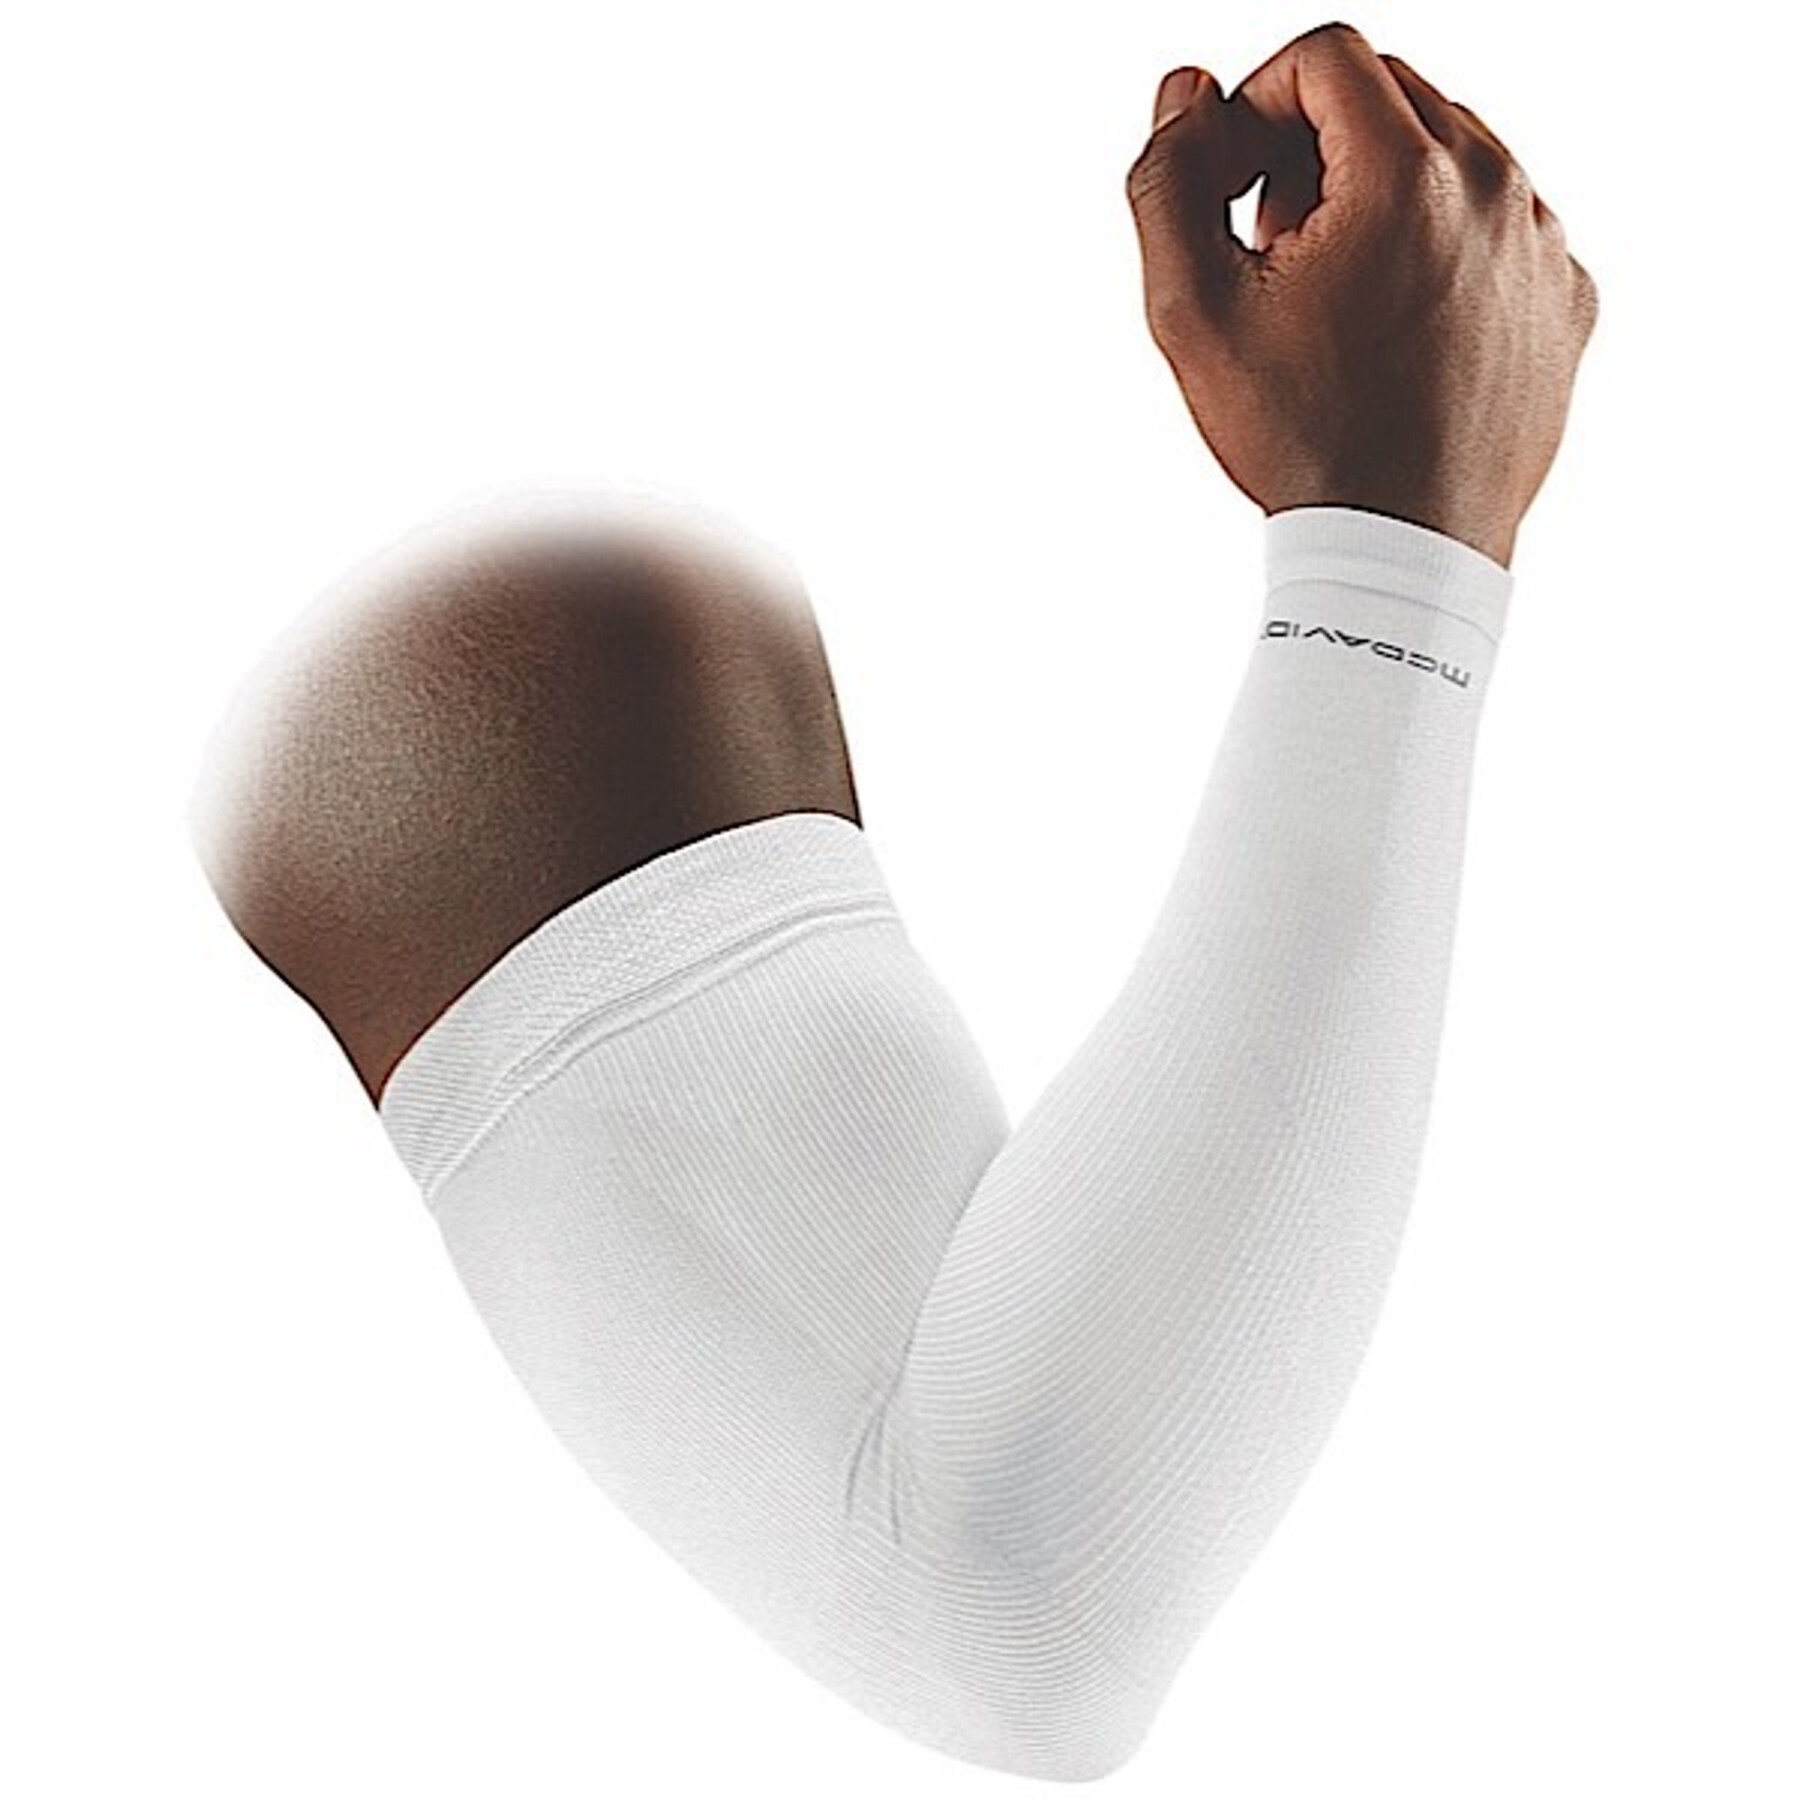 Manchon de compression bras McDavid bras ACTIVE